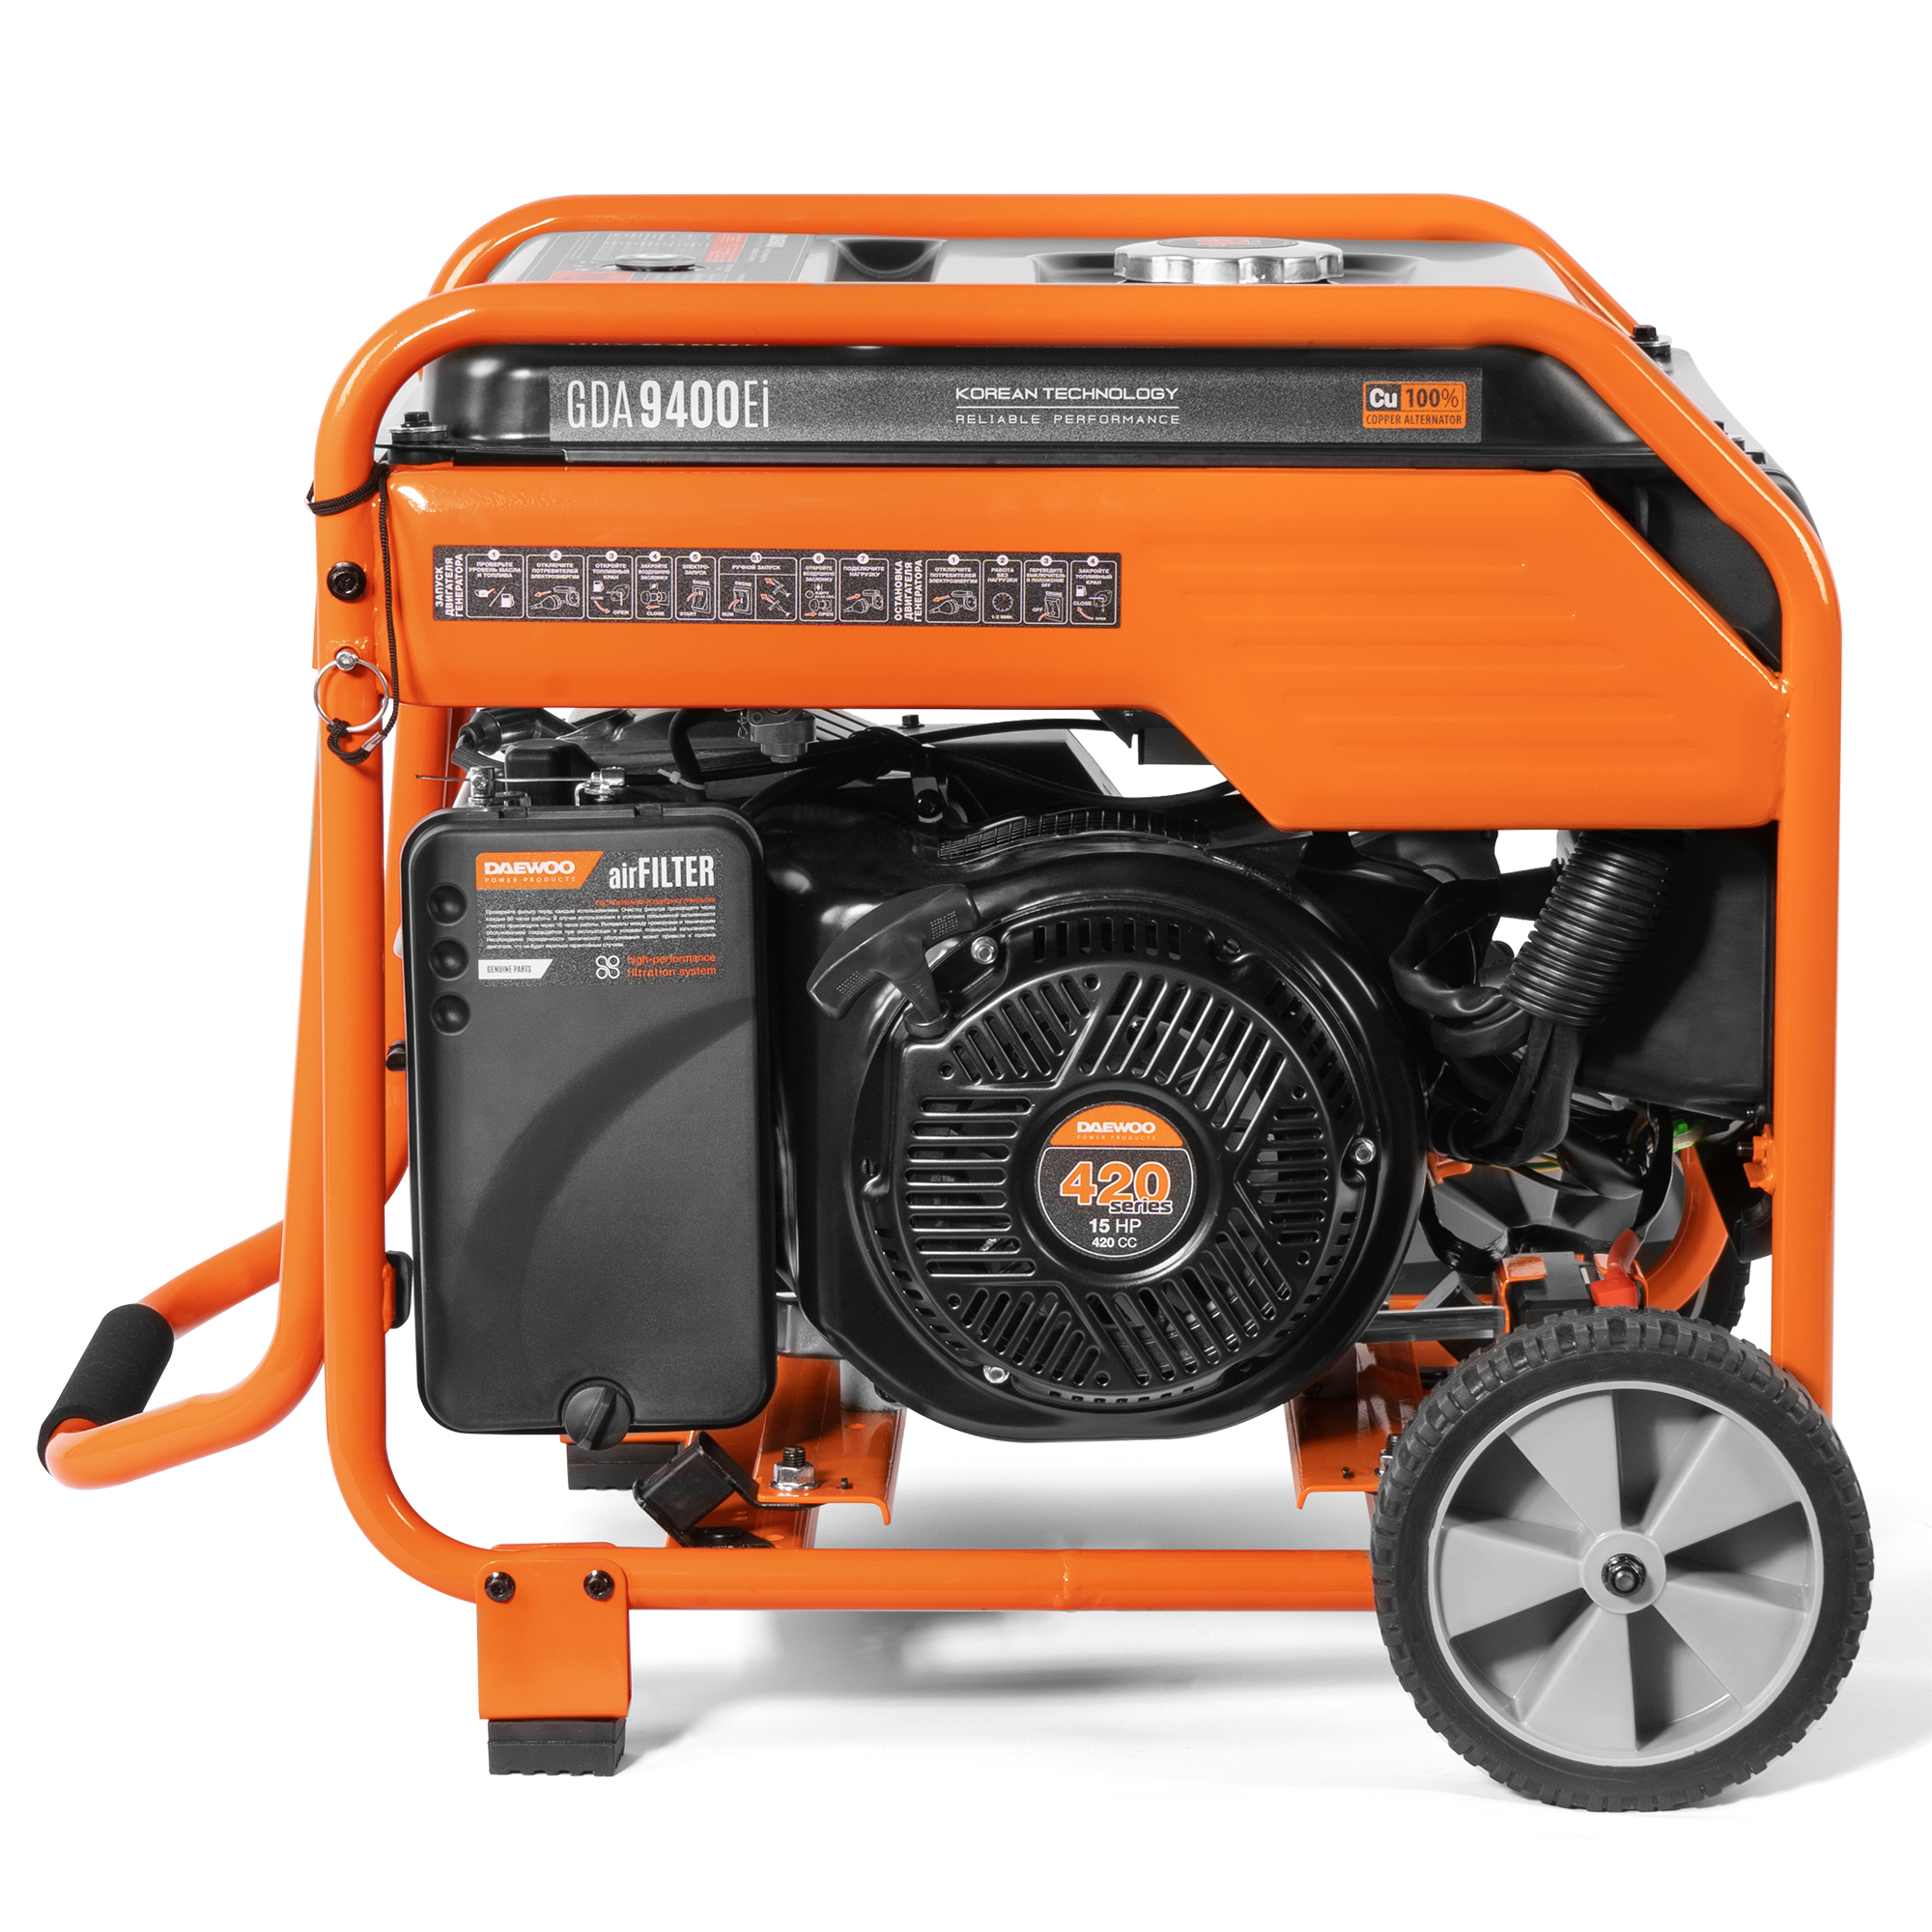 Генератор бензиновый DAEWOO инверторный (GDA 9400EI), цвет оранжевый series 420 - фото 7